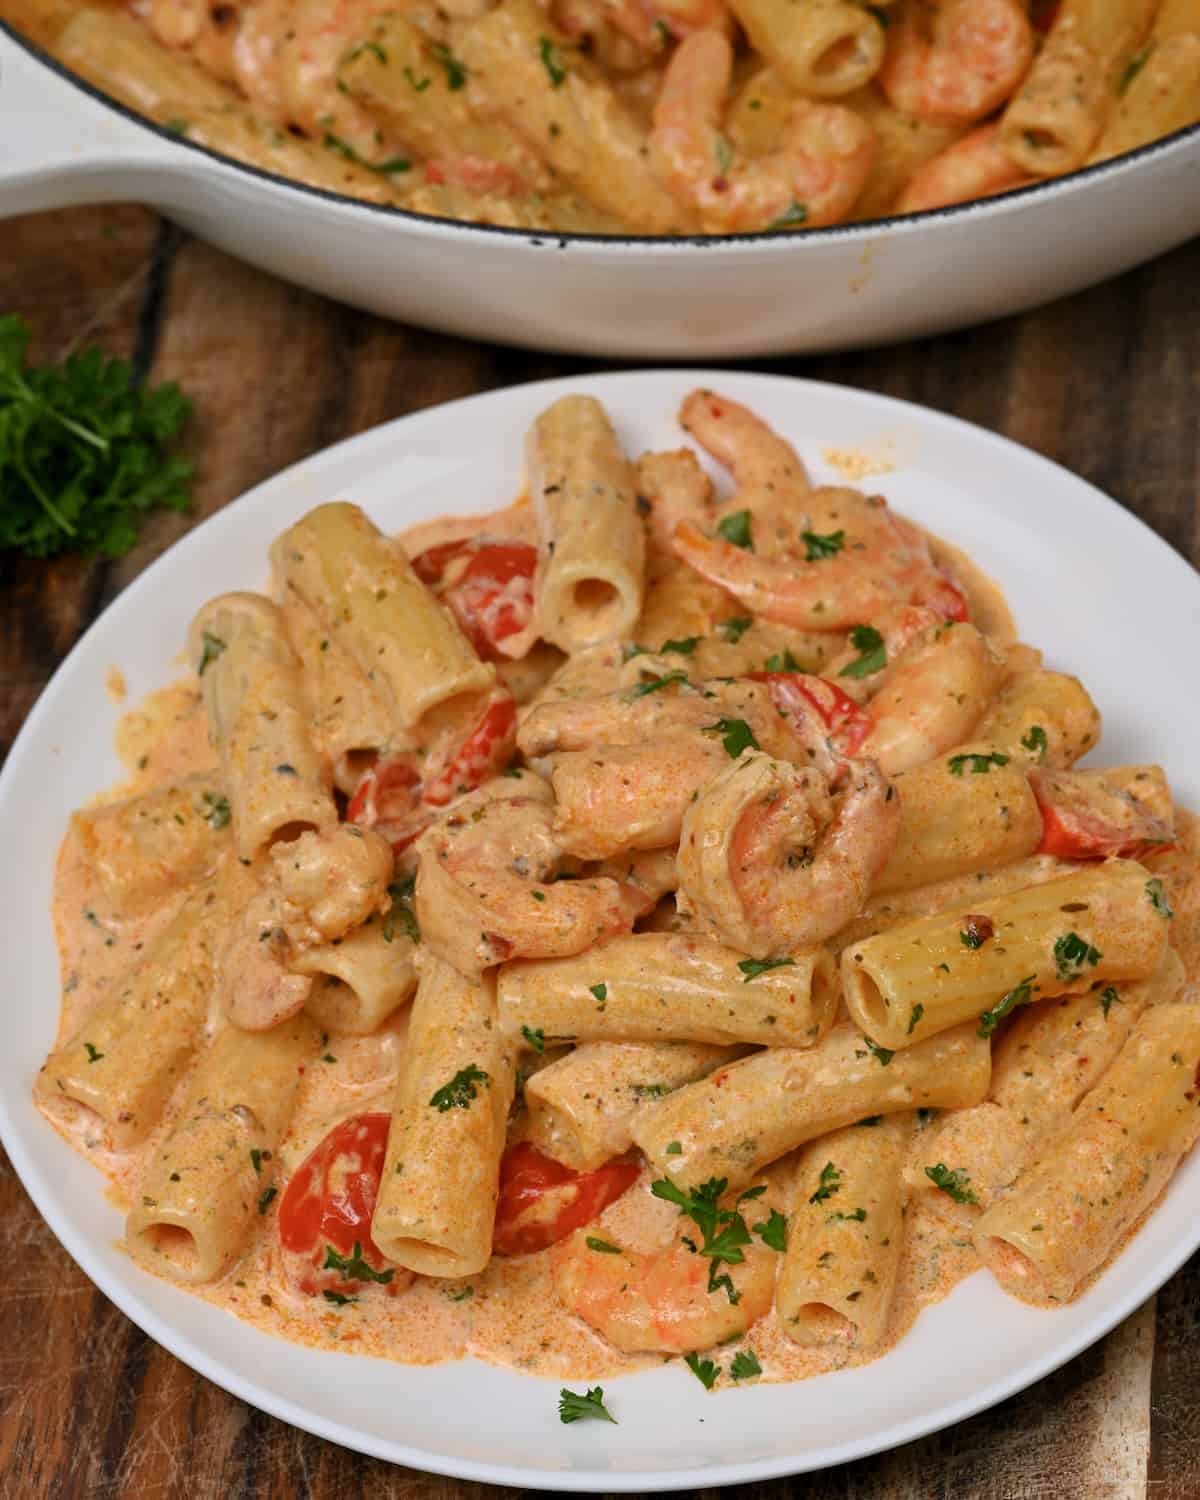 A serving oh cajun shrimp pasta